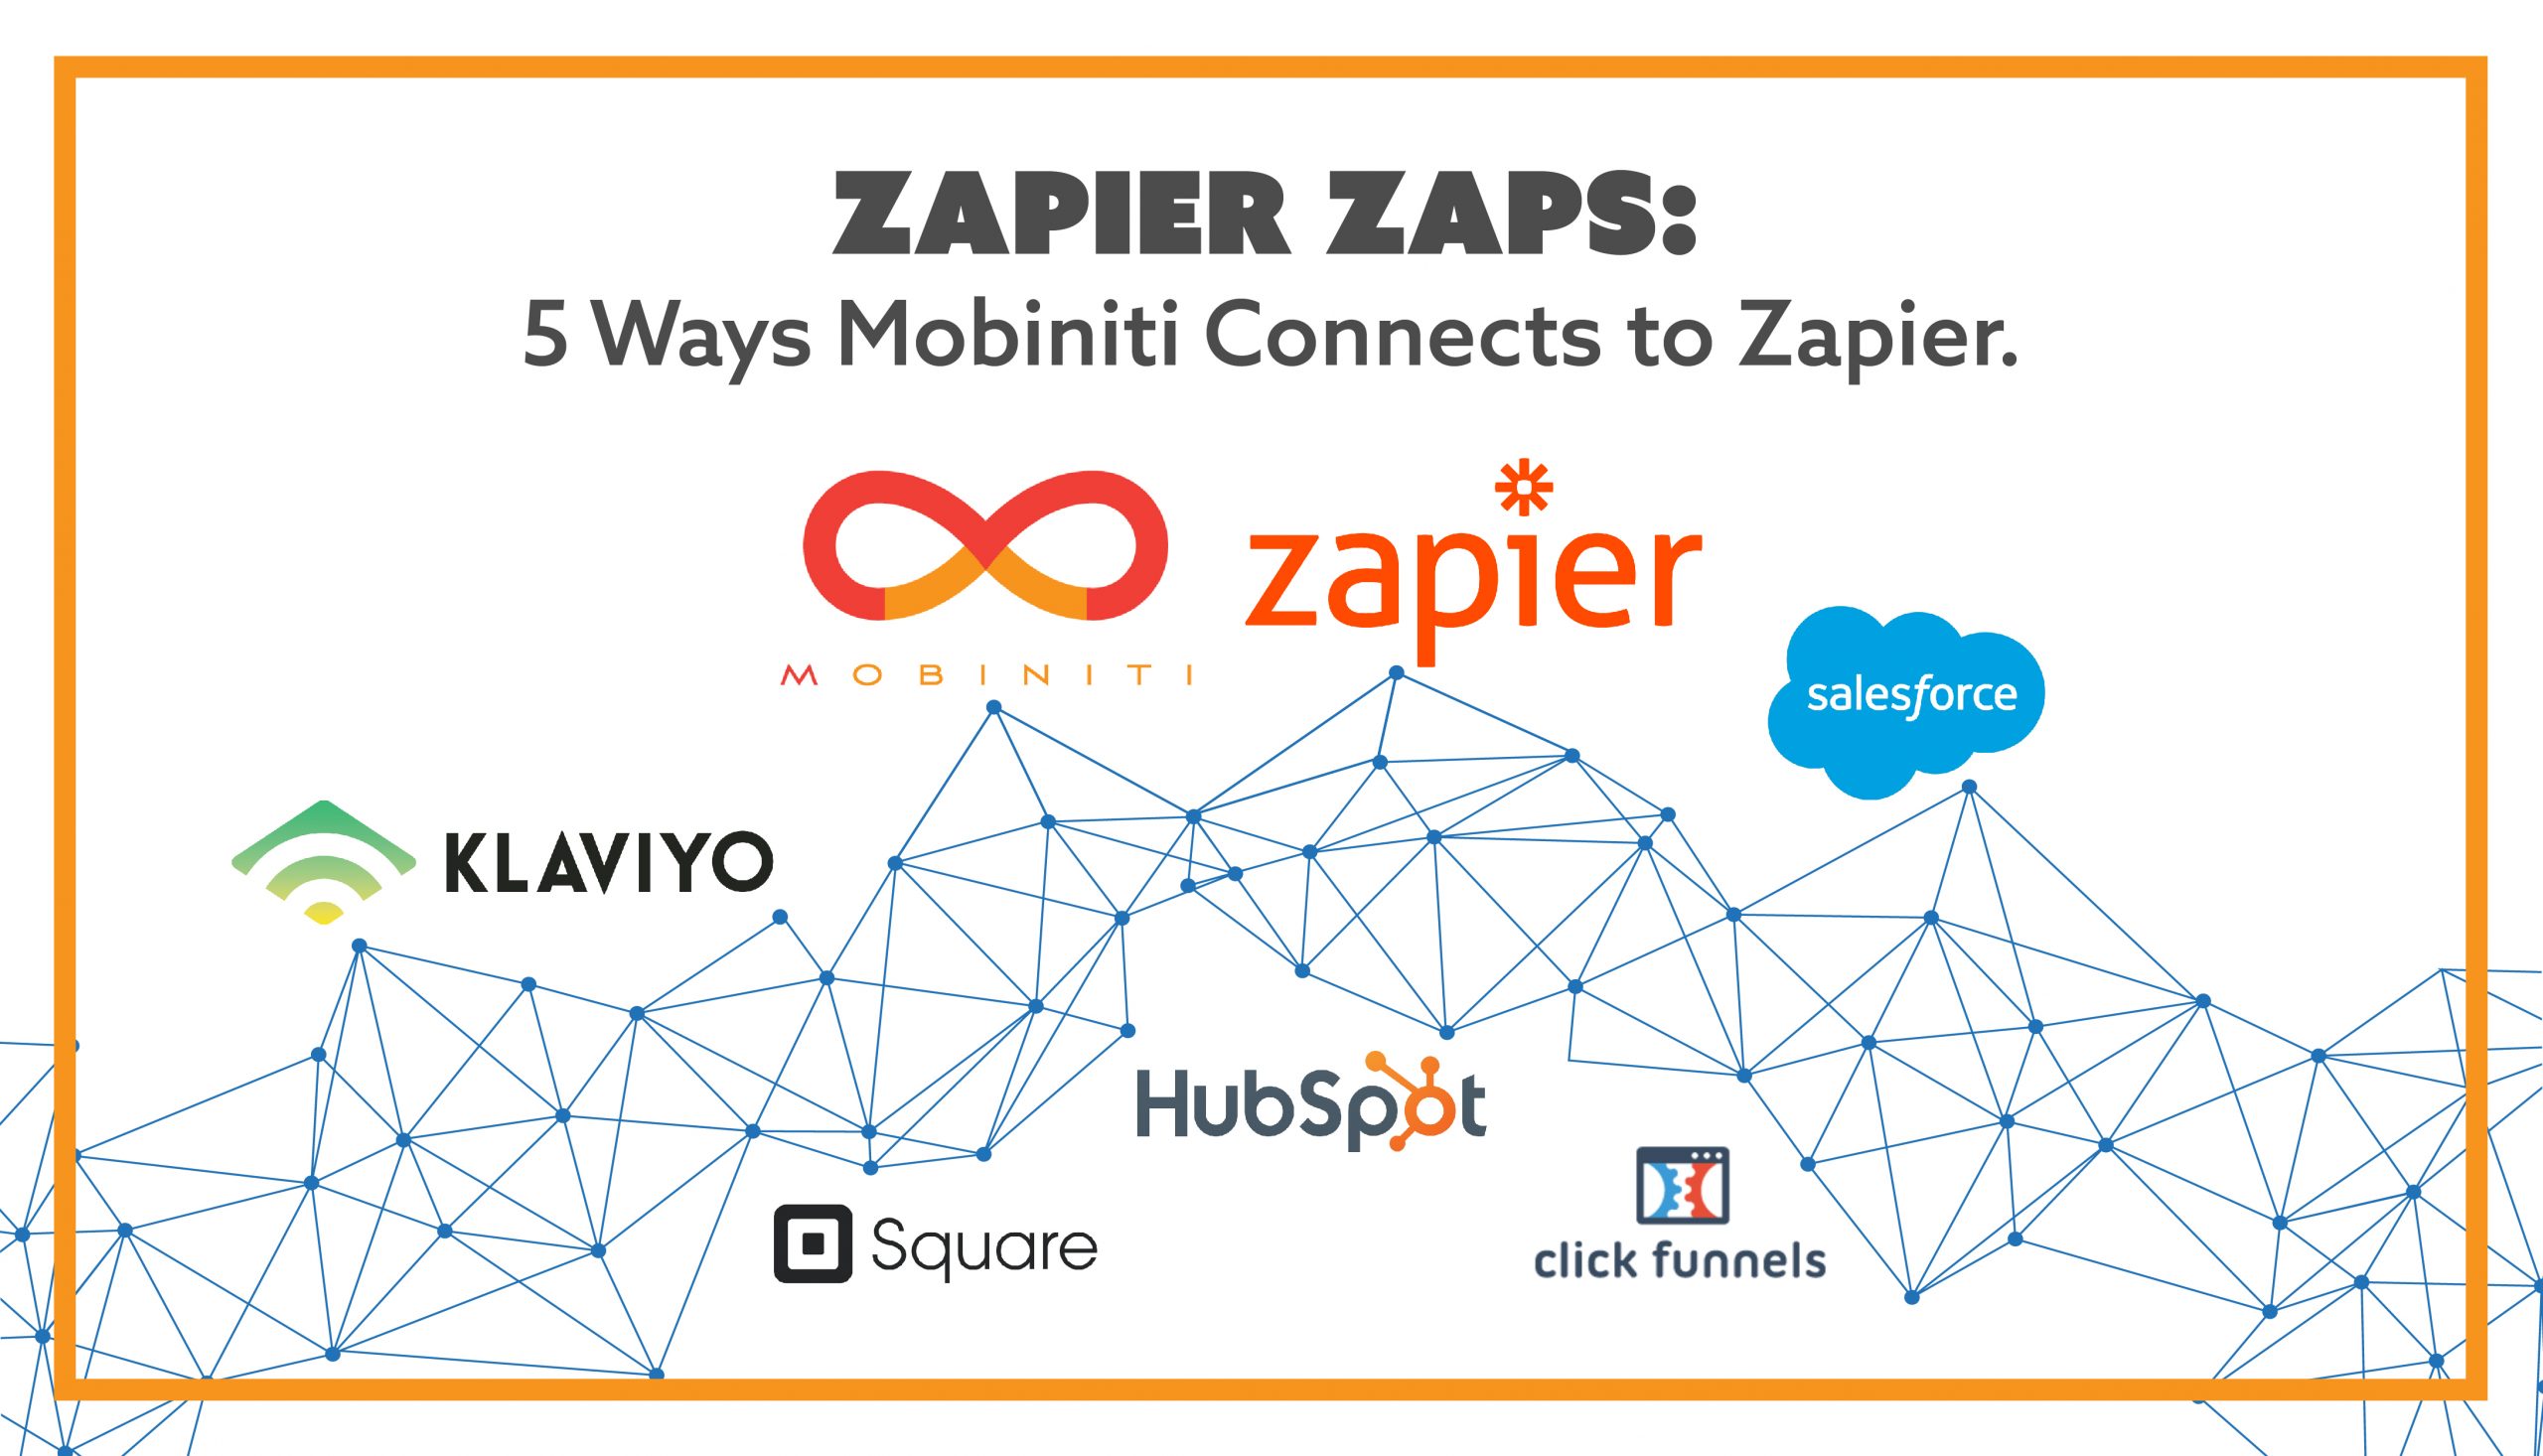 Zapier Zaps: 5 Ways Mobiniti Connects to Zapier